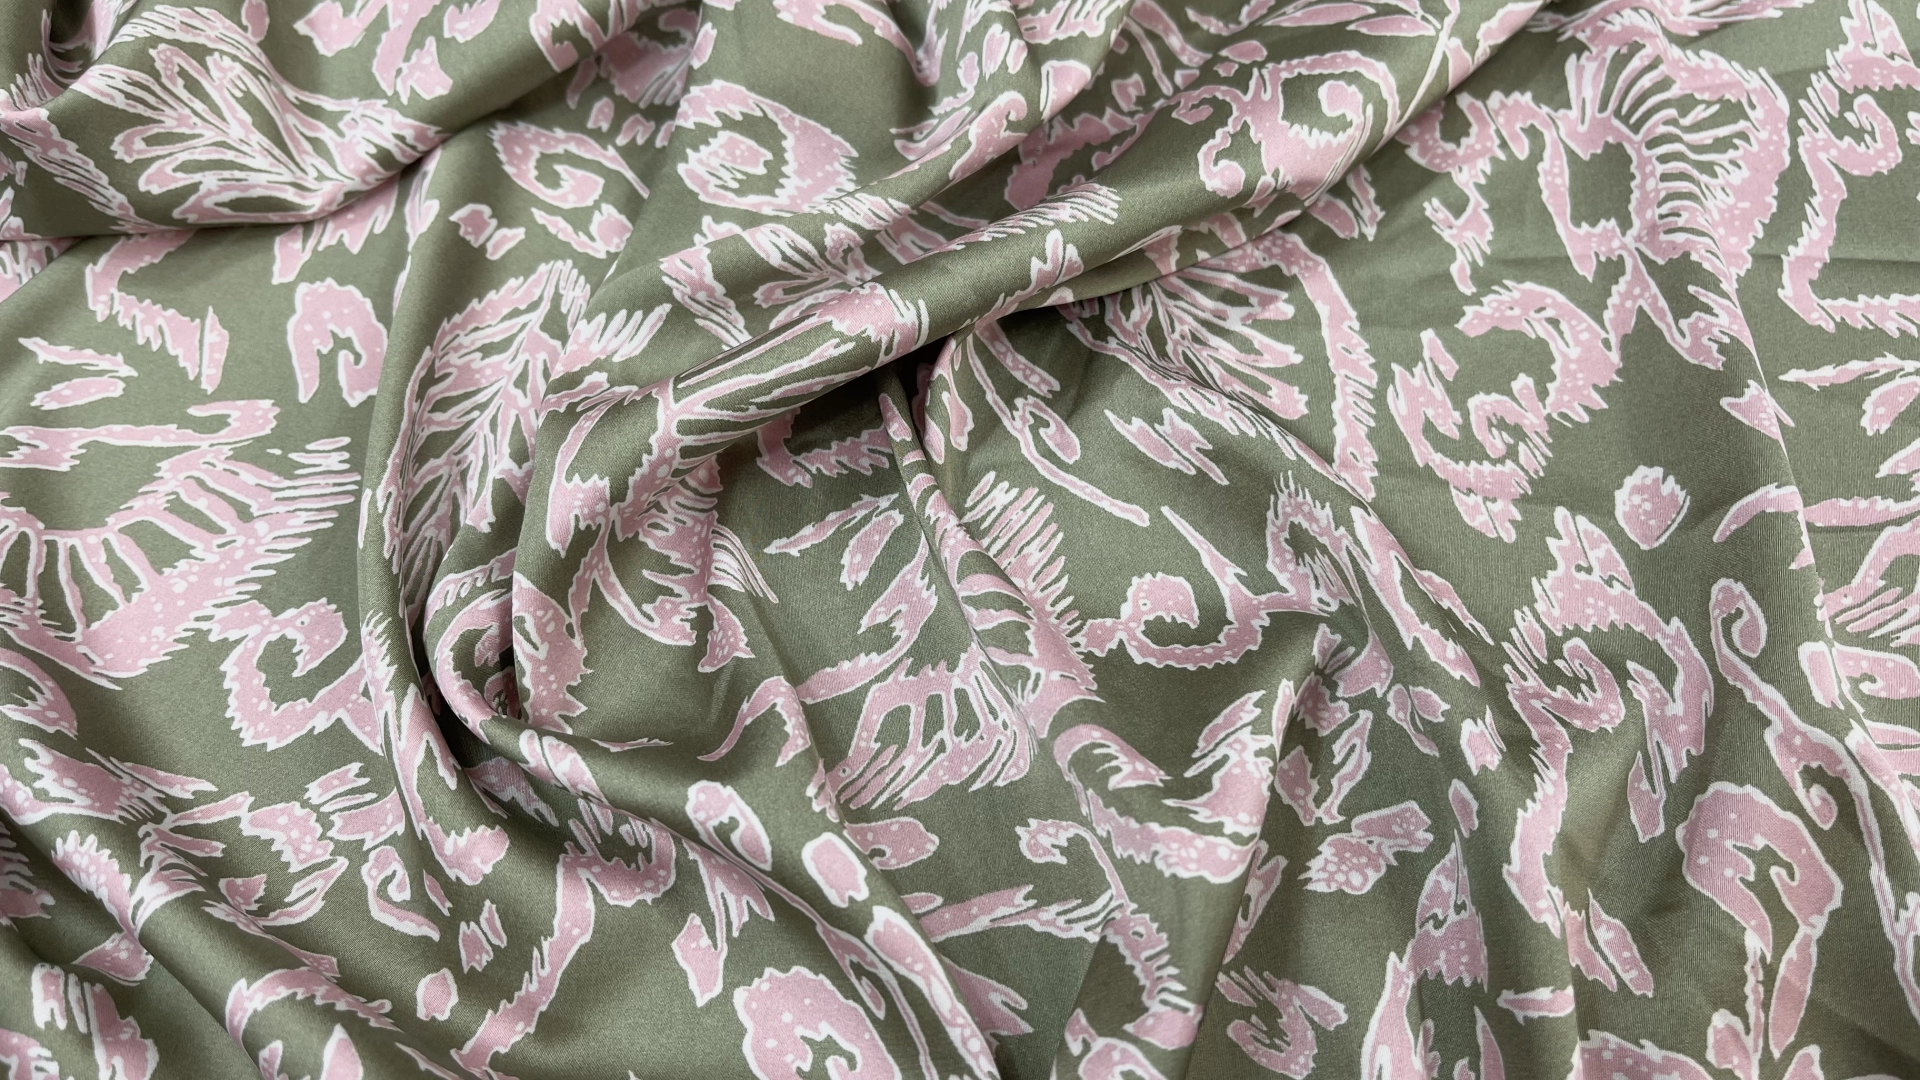 Атлас с торговым названием Армани спокойного оливкового цвета с орнаментом розового цвета. Атлас тактильно очень приятный и мягкий, струящийся с матовым переливом. Идеально подходит для пошива рубашки или платья.